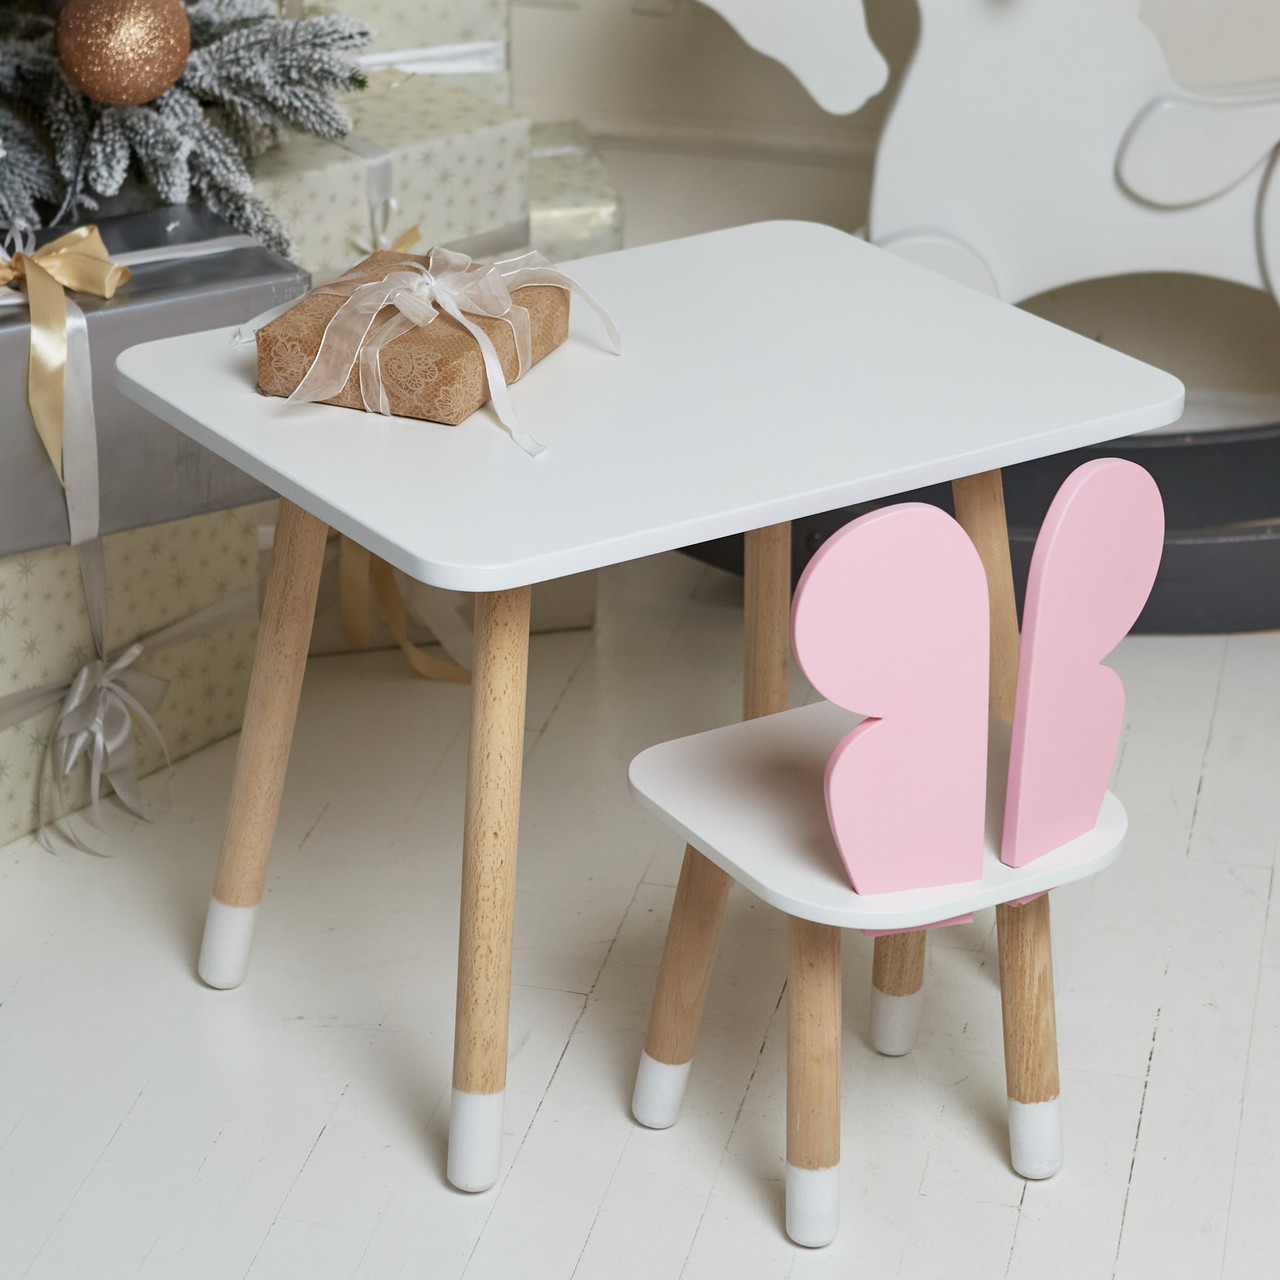 Дитячий столик і стільчик, дитячий дерев’яний стіл та стільчик